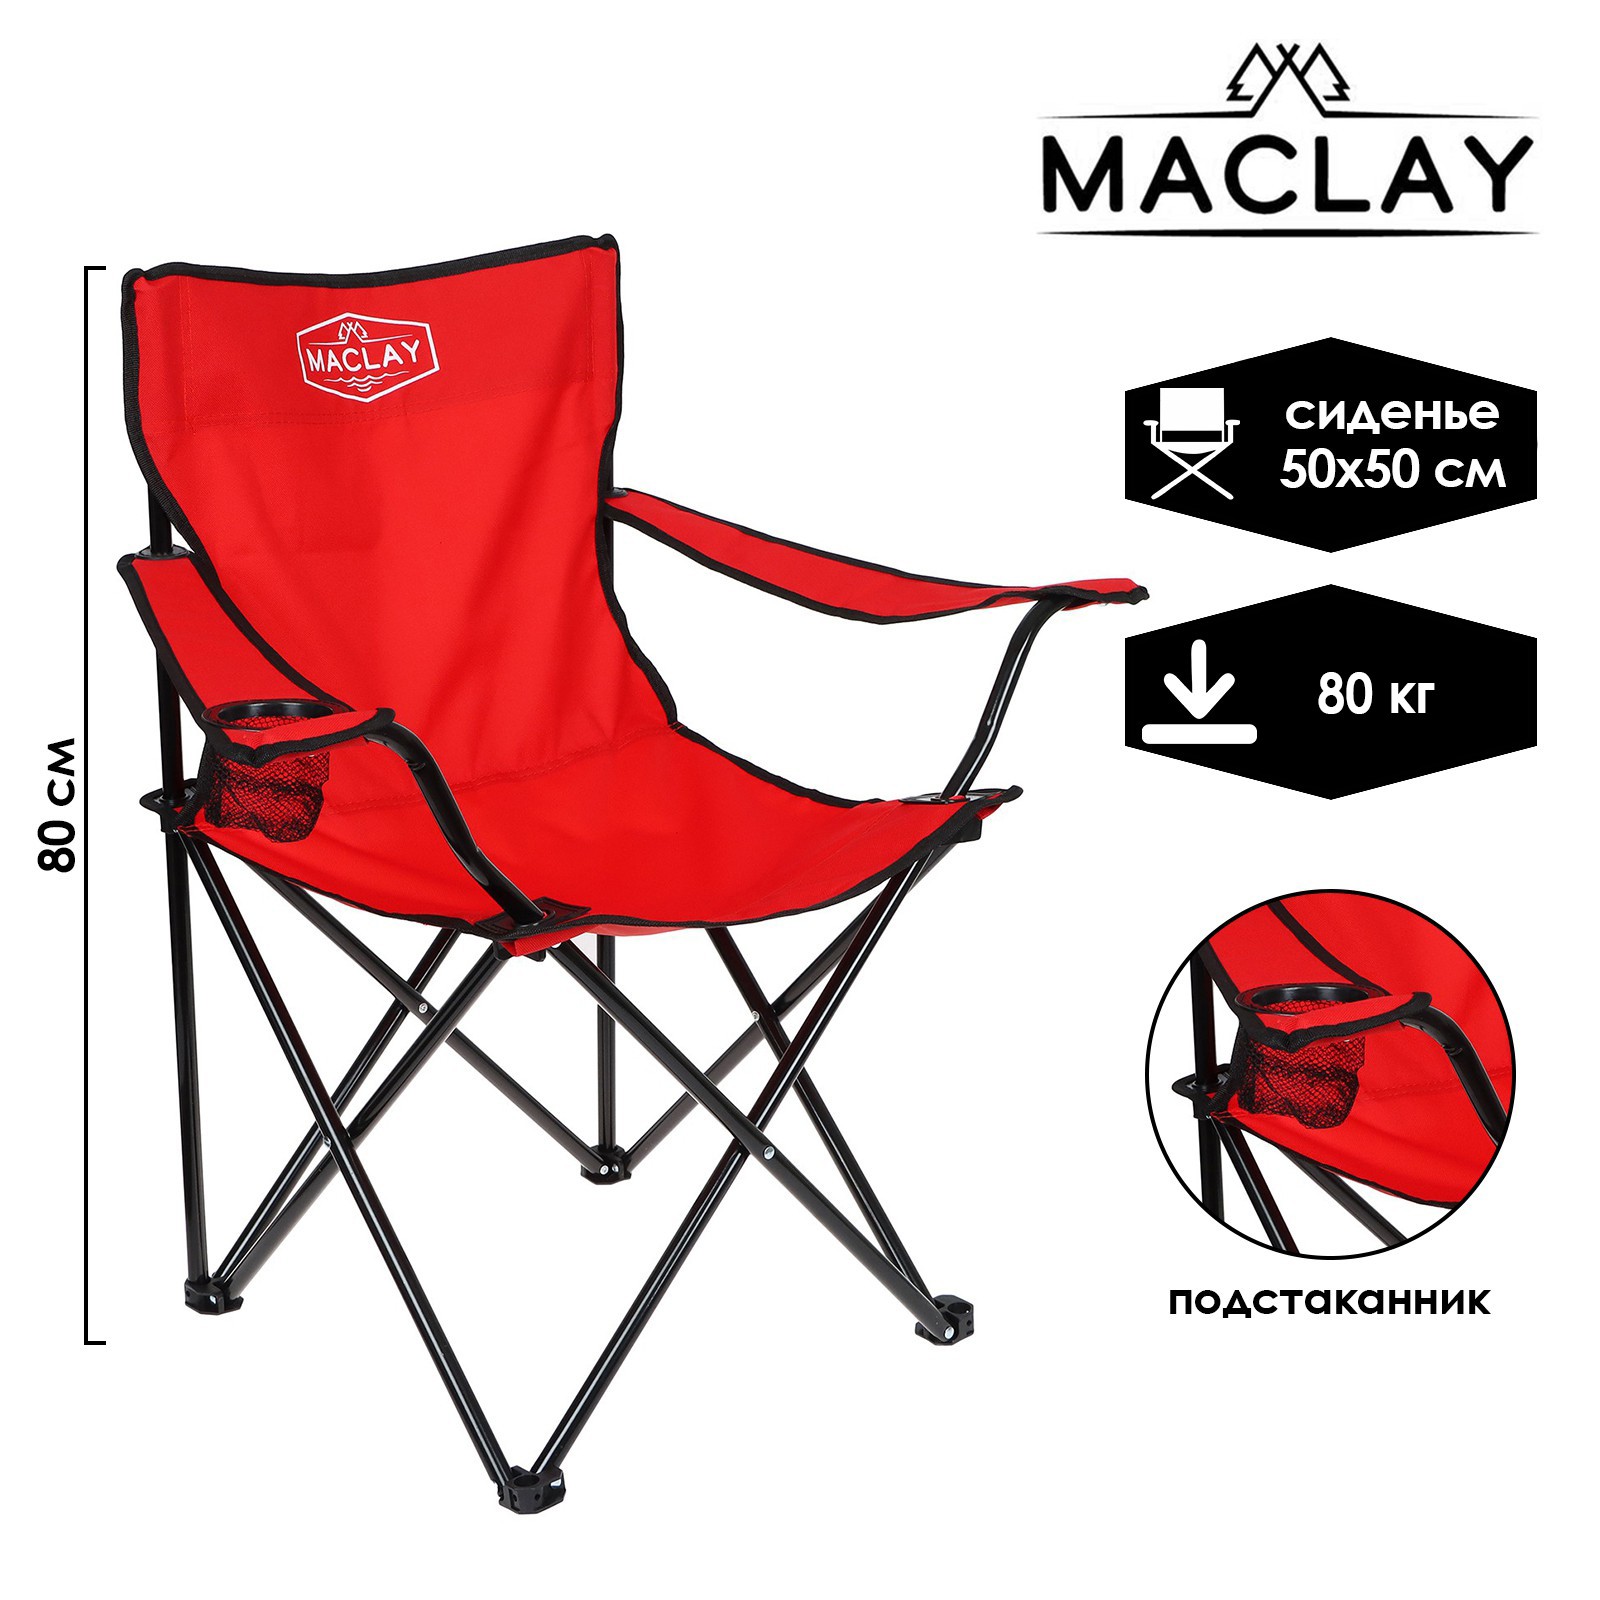 Кресло Maclay туристическое с подстаканником р. 50 х 50 х 80 см до 80 кг цвет красный - фото 1